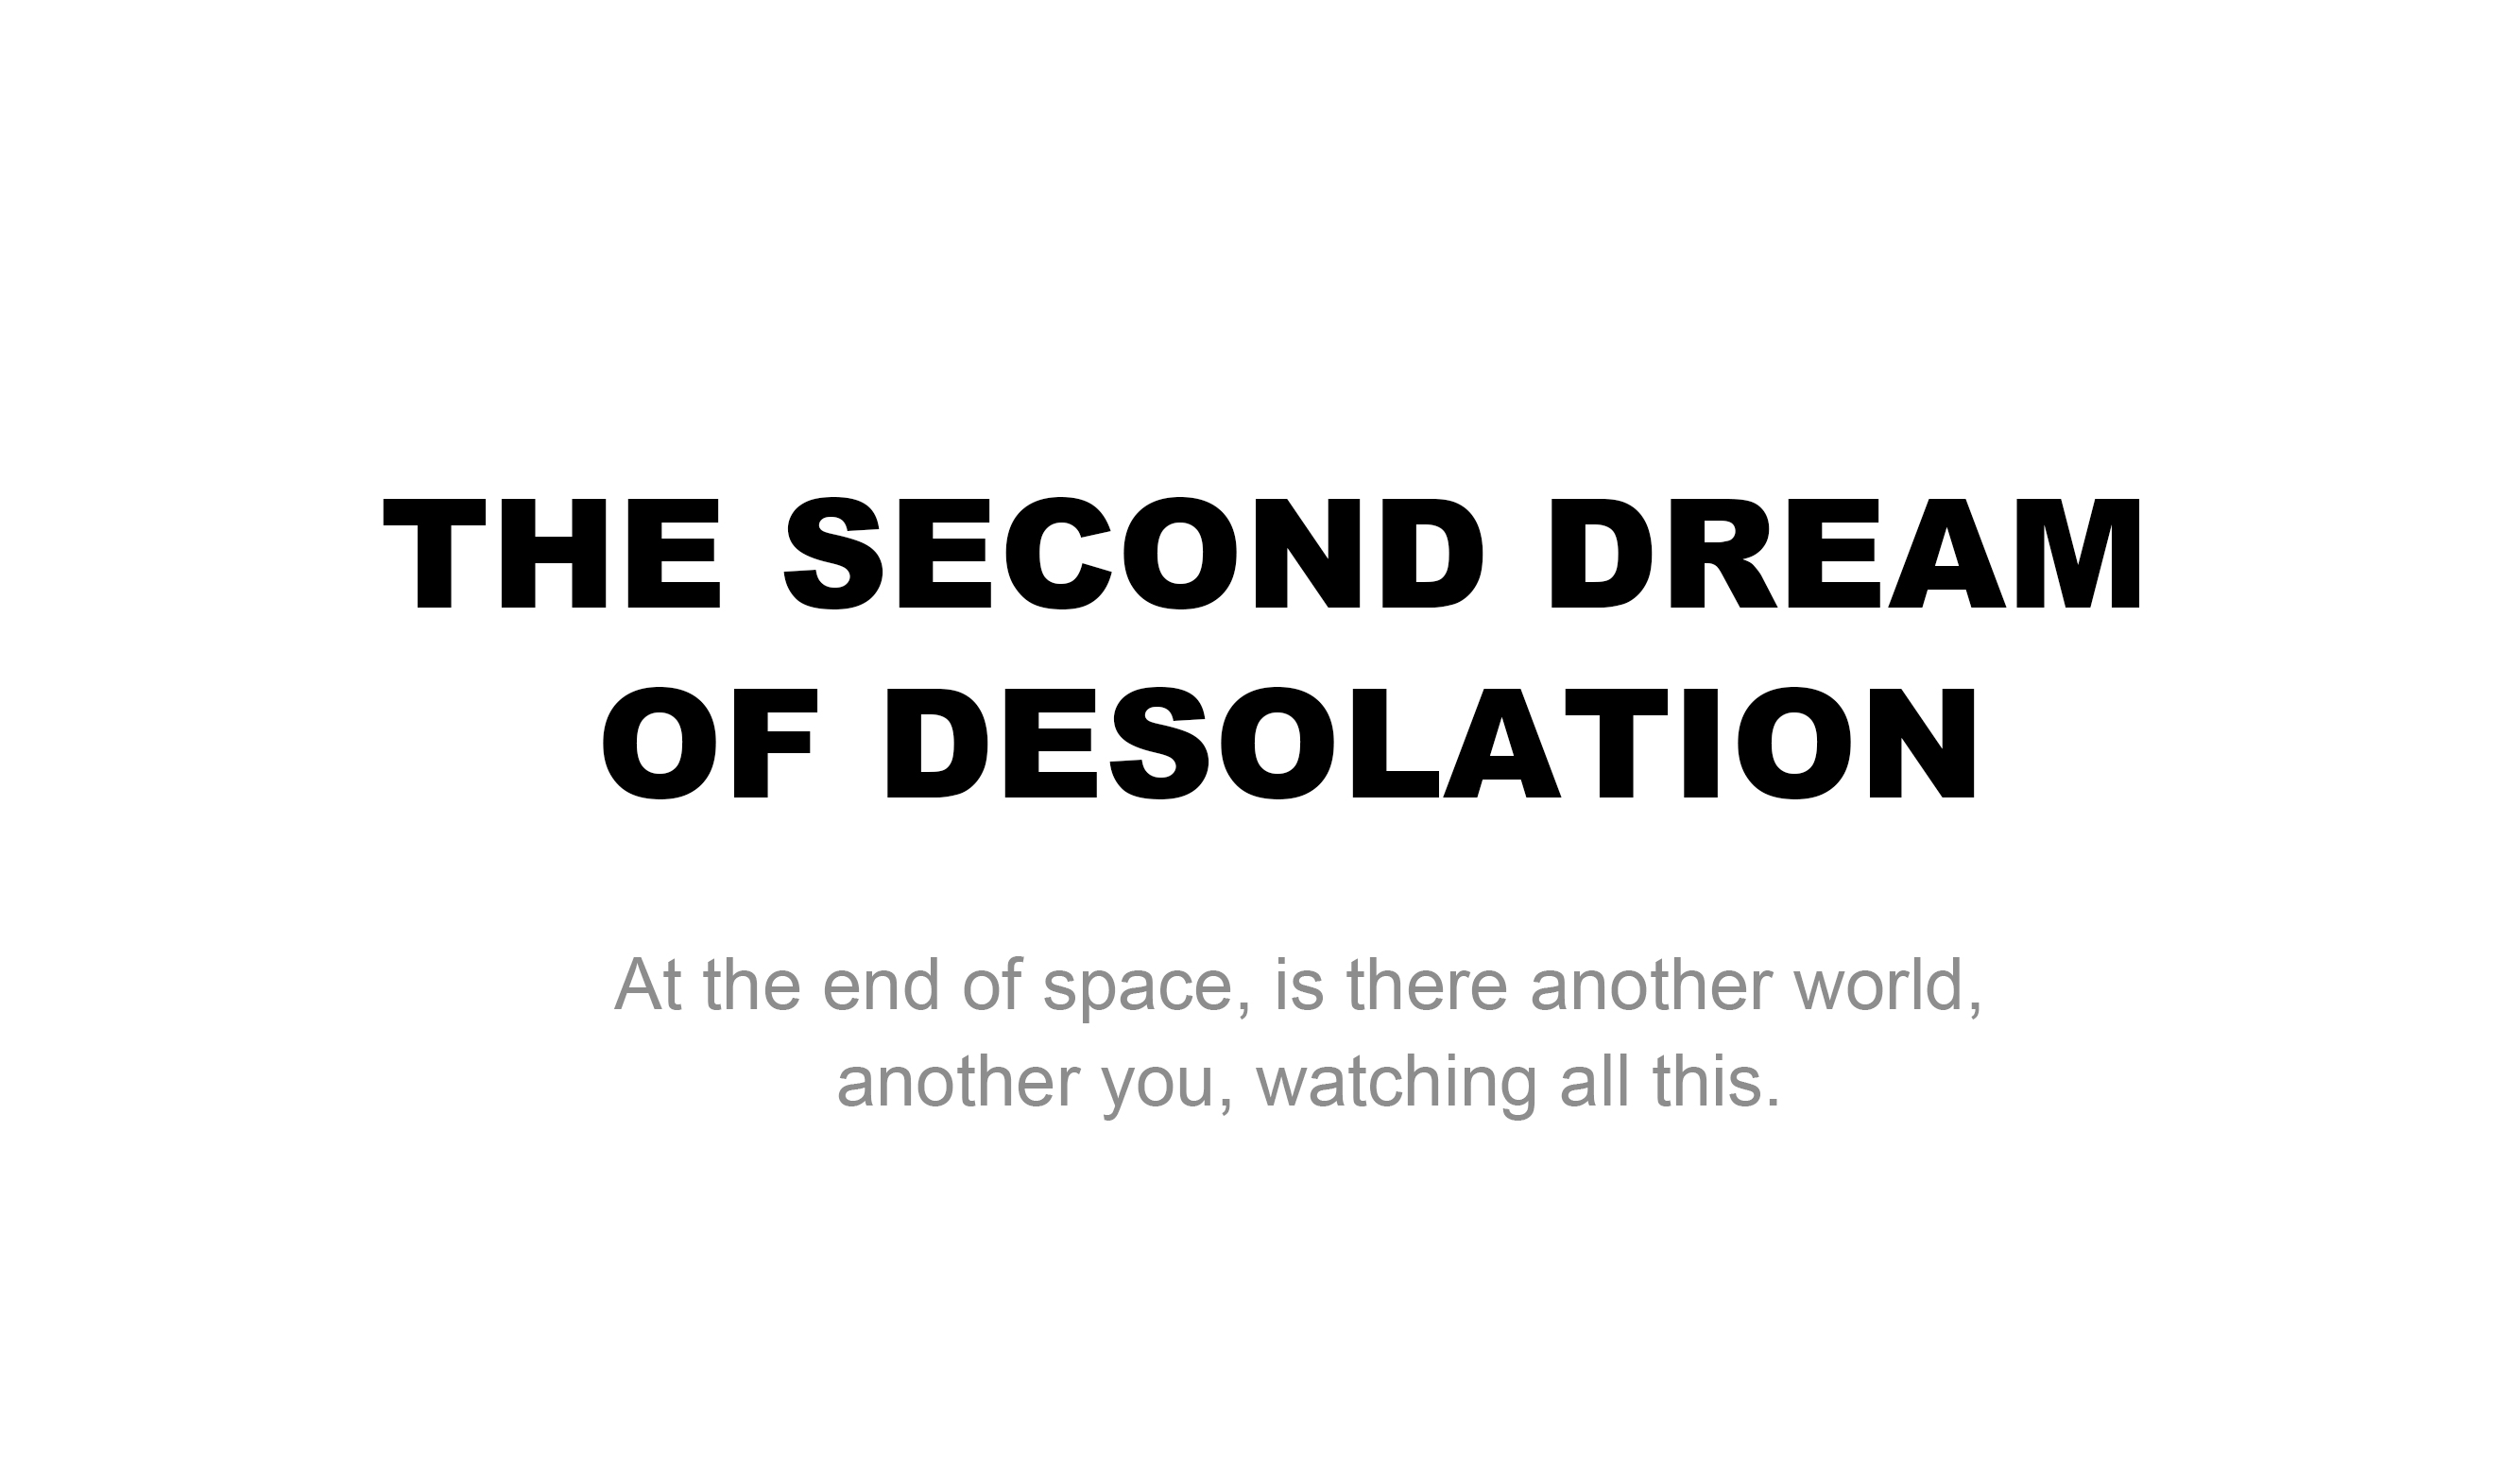 《荒世次梦》The second dream  of desolation